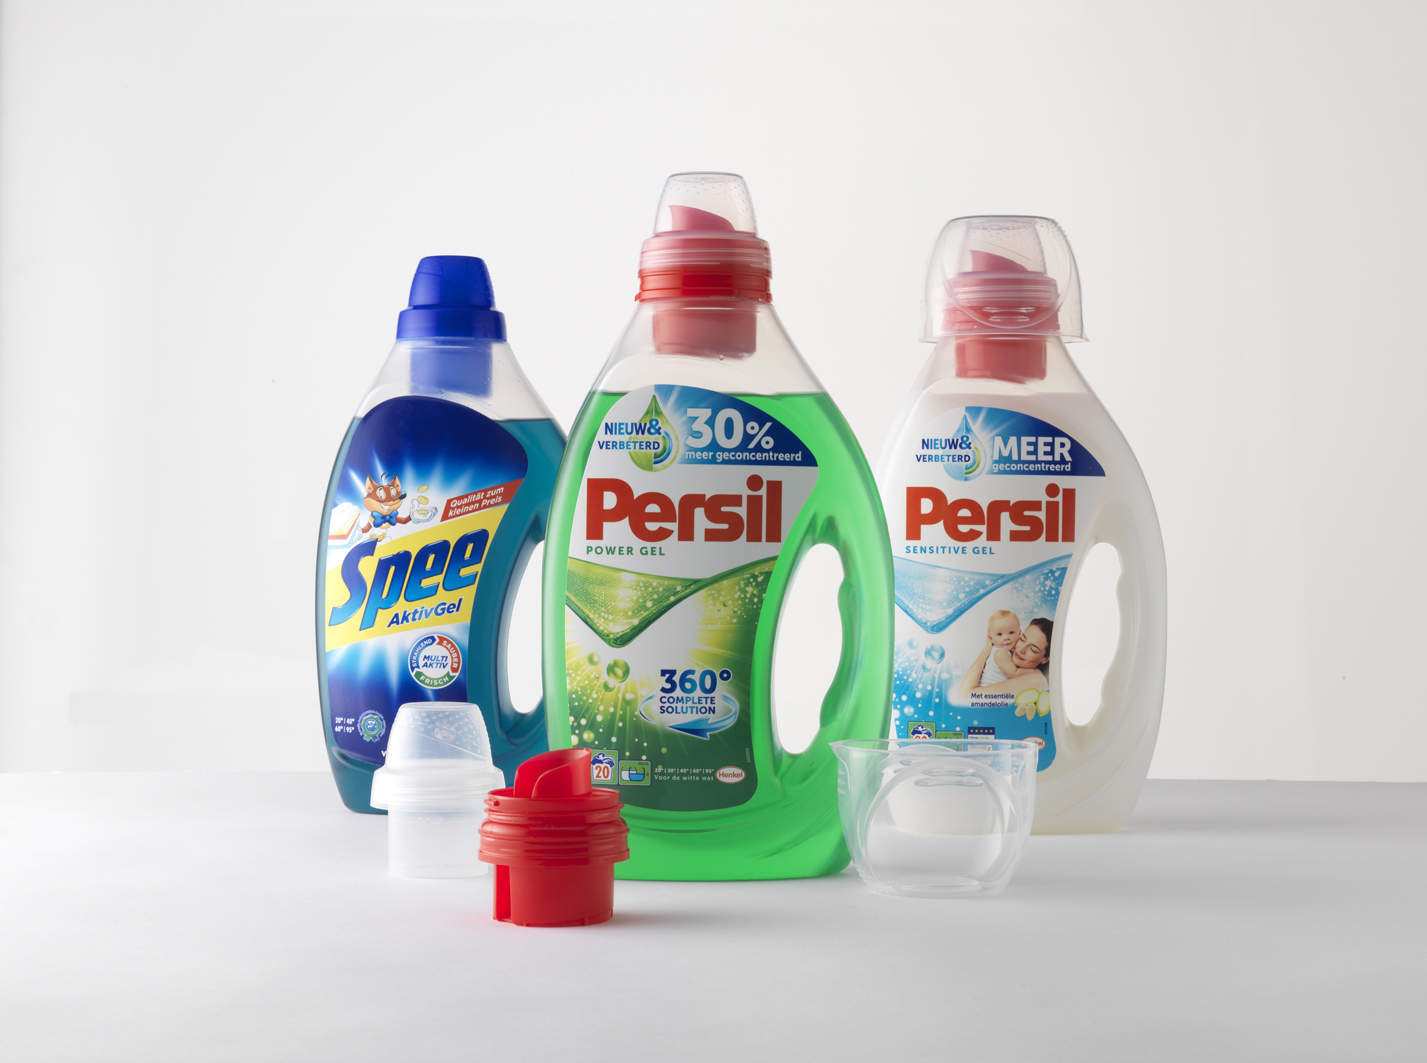 Weener develops new closure for Henkel’s Persil laundry detergent brand